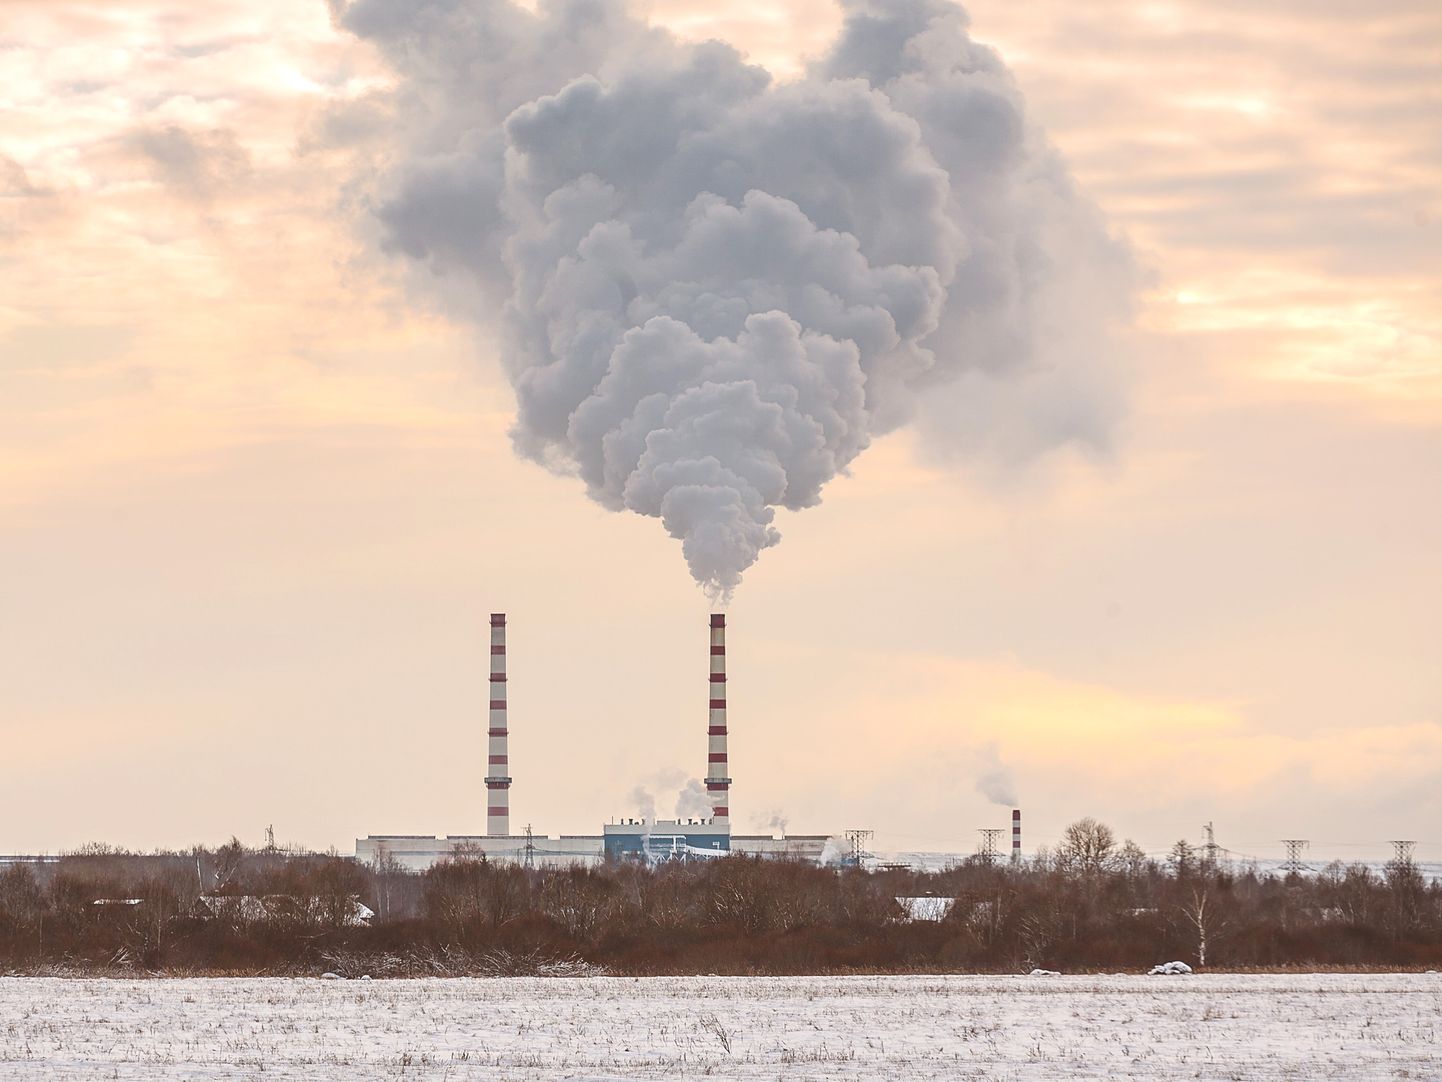 Kui möödunud külmadel talvedel tossas Balti elektrijaama ainus töös olev energiaplokk Narva all nagu tõeline katlamaja, siis nüüd ei ole selle töö enam rentaabel isegi plusskraadidega. Fotol paremal on näha reservgaasikatlamaja madal korsten, millest on praeguseks saanud faktiliselt peamine ja samuti kallis Narva majade kütja.